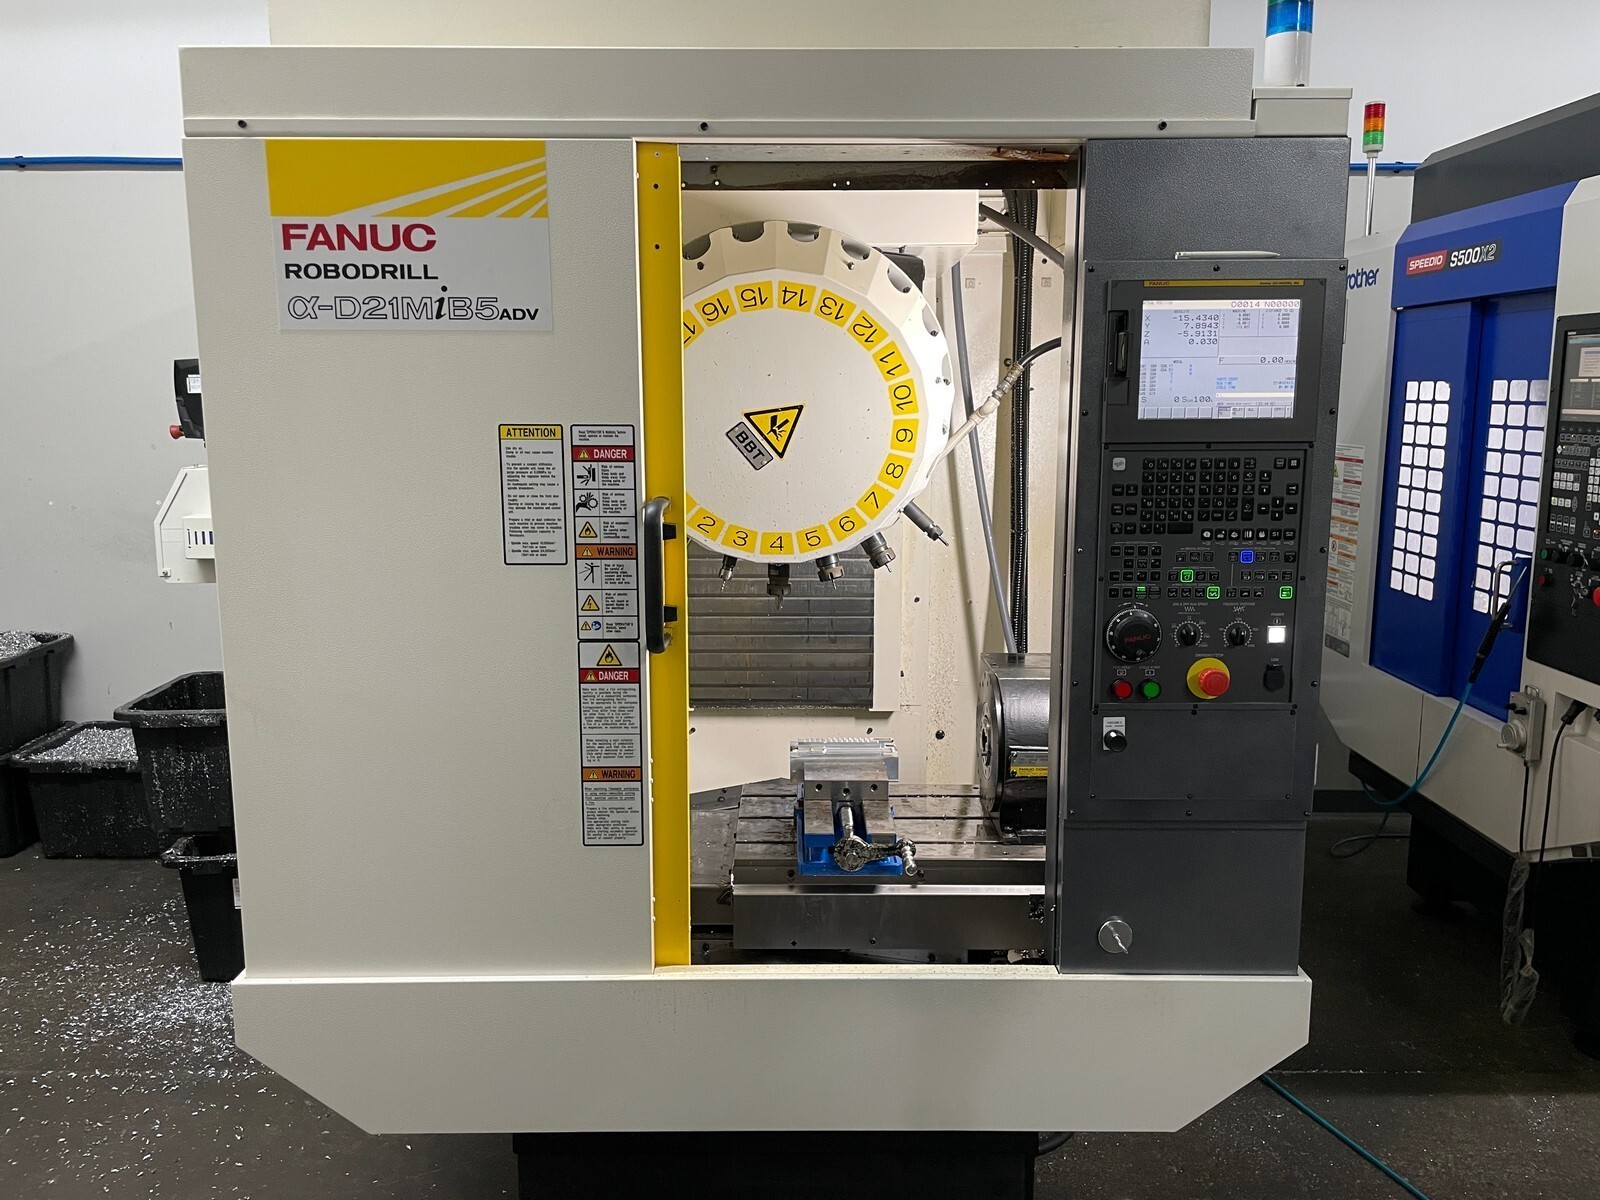 2018 FANUC Robodrill Alpha D21MiB5 CNC FANUC ROBODRILLS | Hindley Machine Tool Sales, LLC